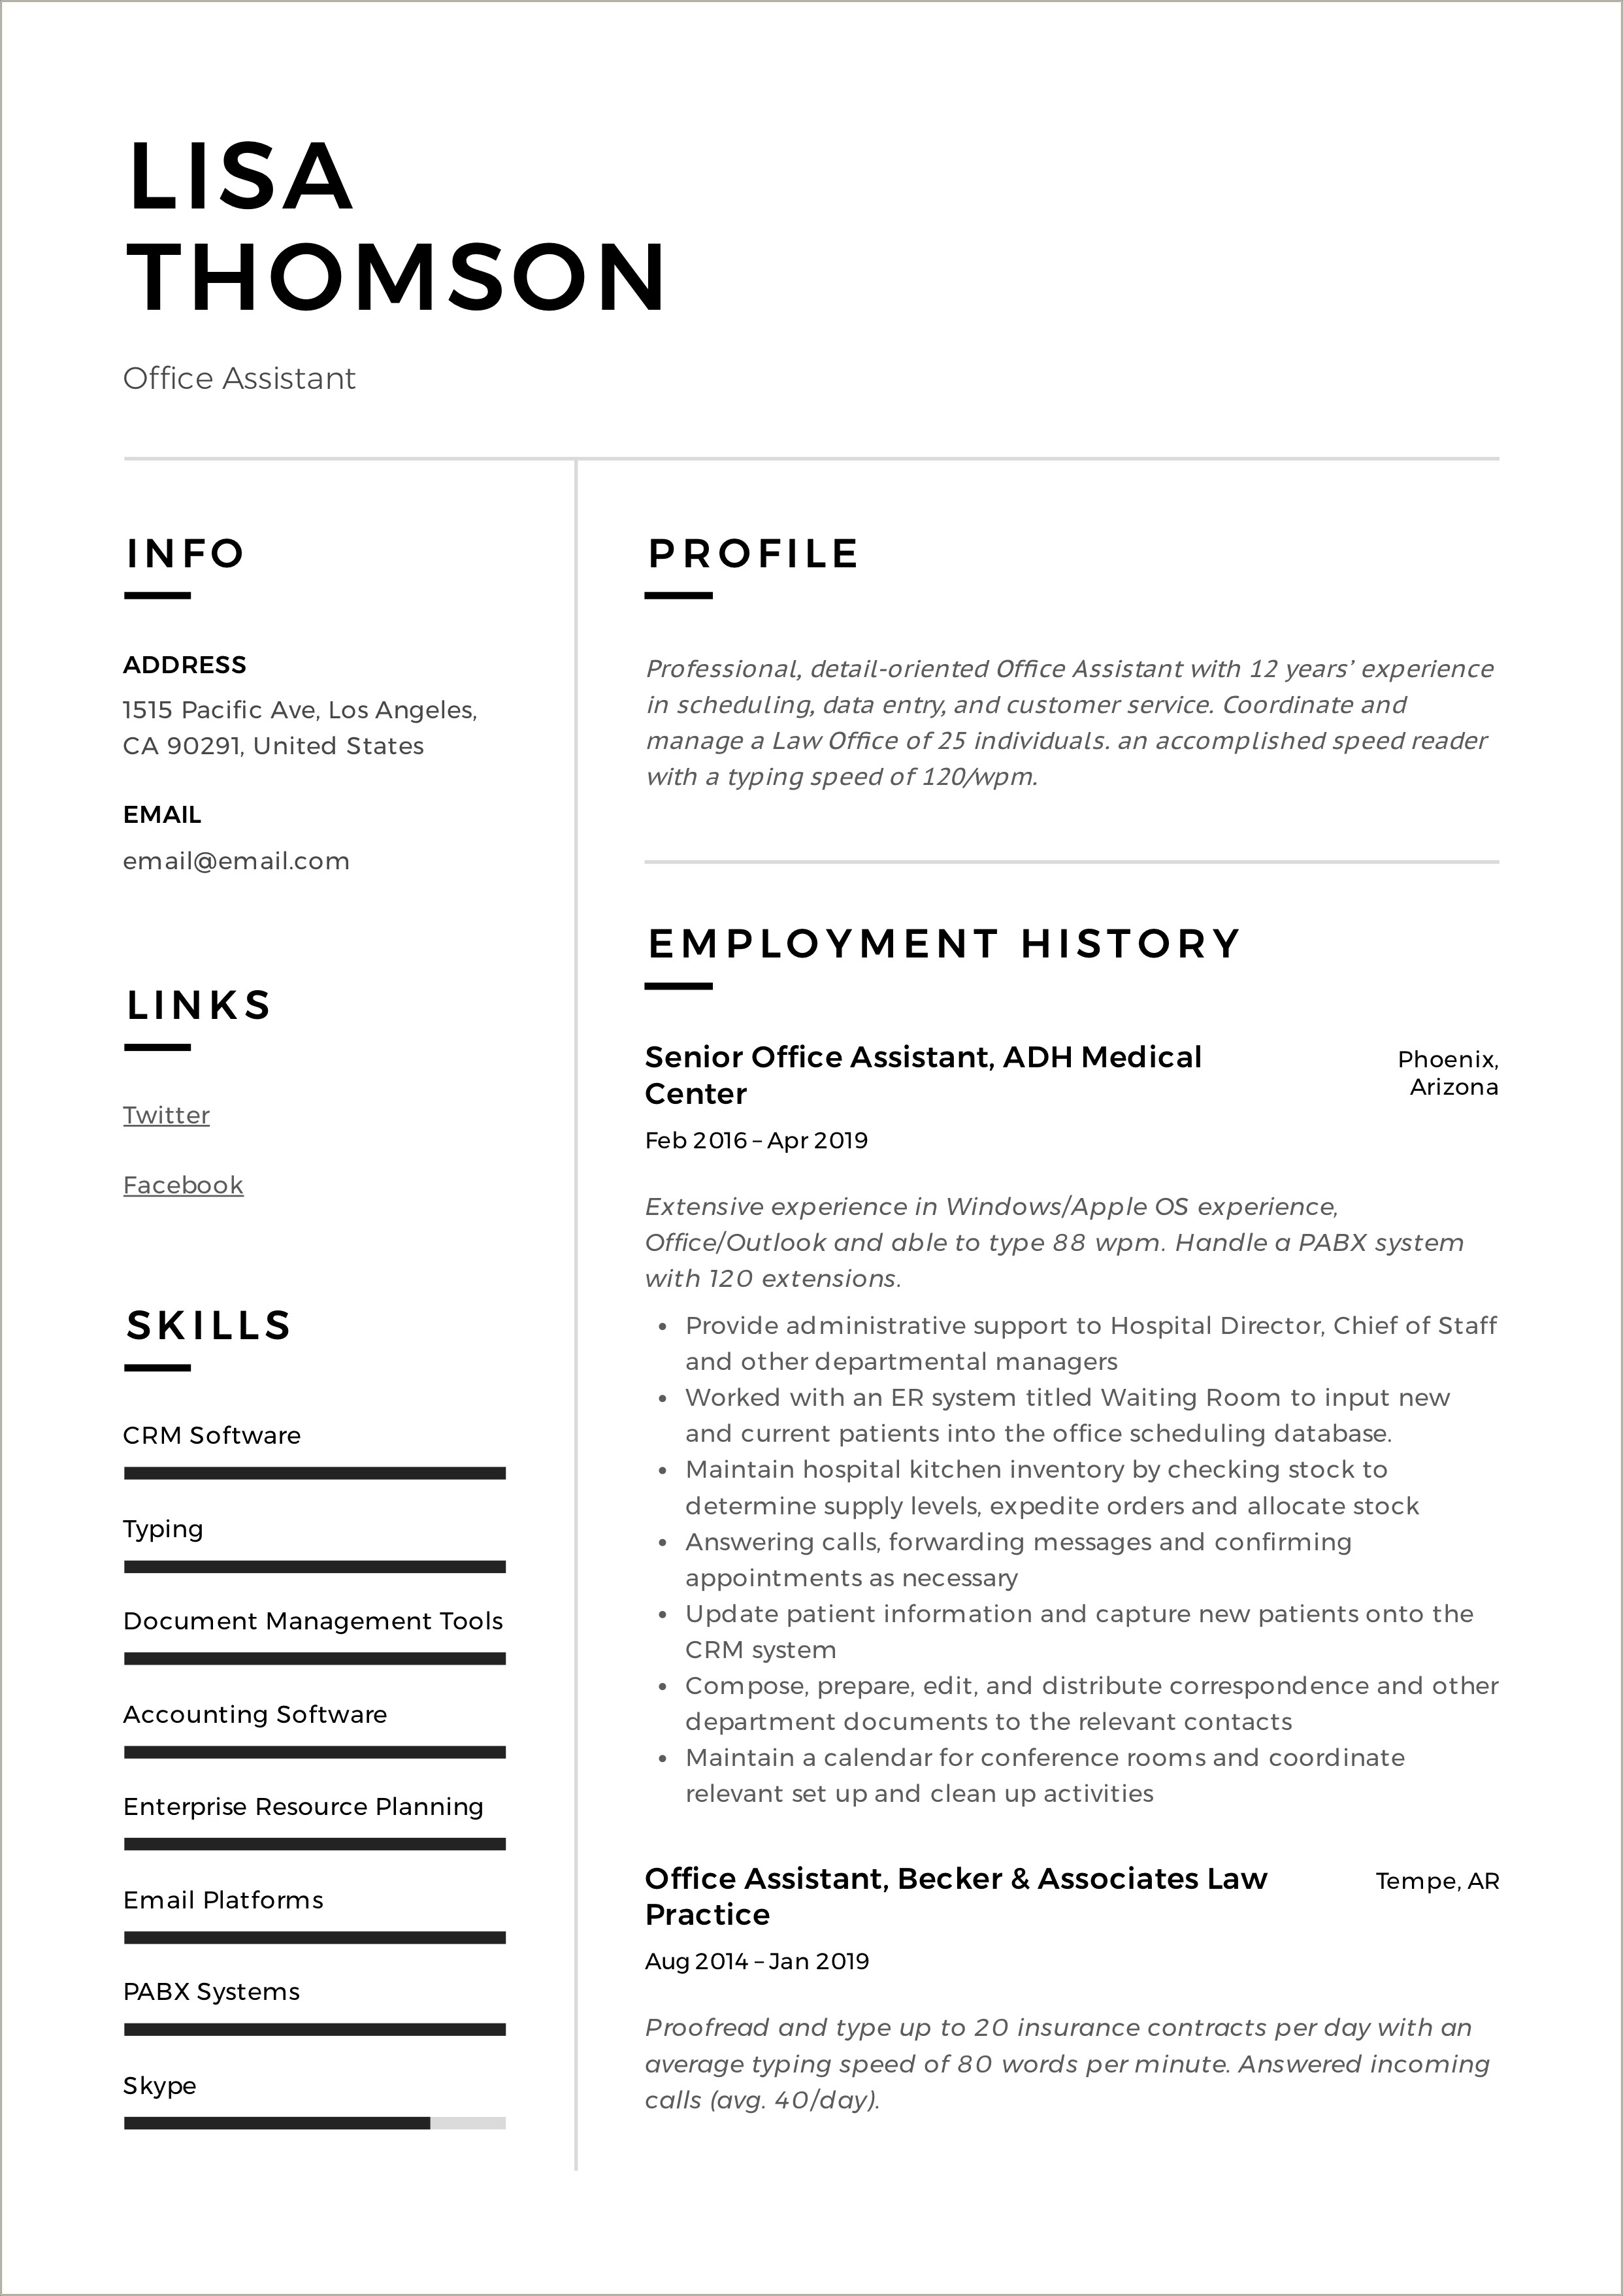 Job Description In Resume For Desk Assistant